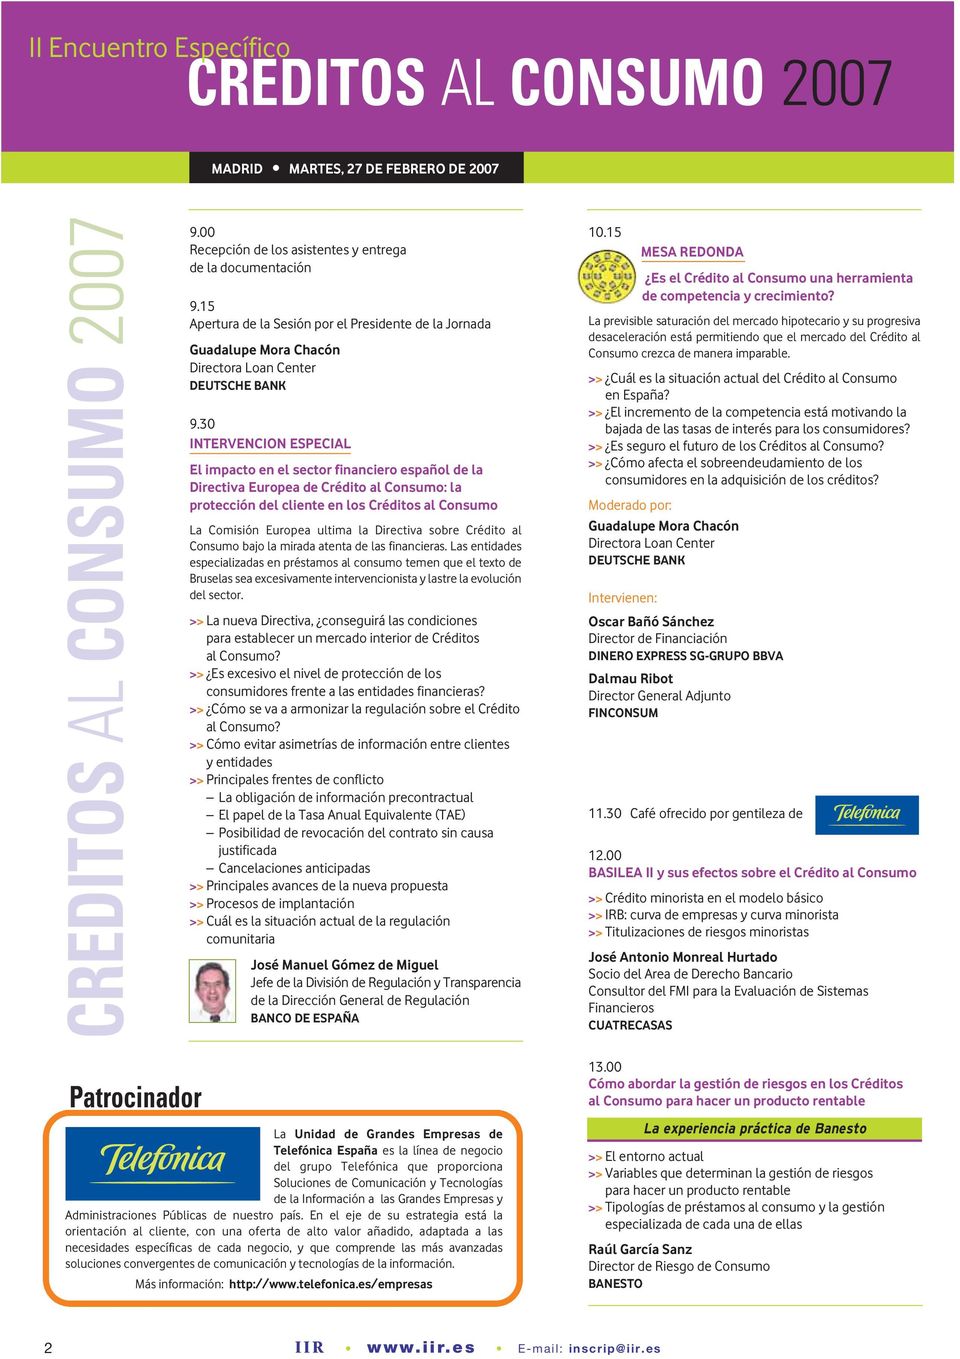 30 INTERVENCION ESPECIAL El impacto en el sector financiero español de la Directiva Europea de Crédito al Consumo: la protección del cliente en los Créditos al Consumo La Comisión Europea ultima la